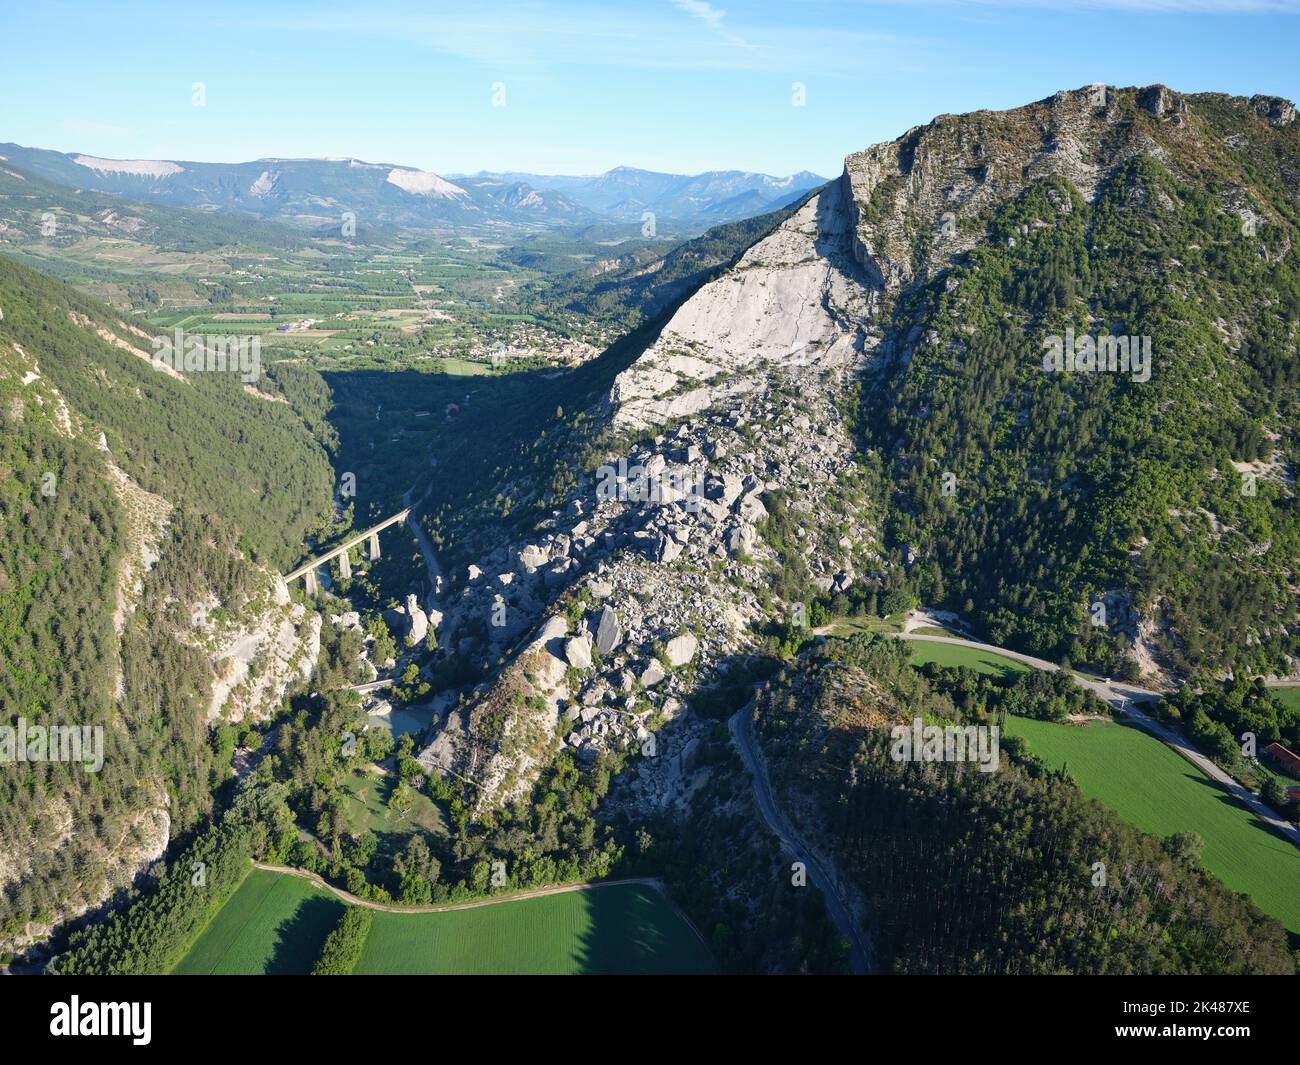 VUE AÉRIENNE. Glissement de terrain historique dans la haute vallée de la Drôme. Il s'est produit en 1442, et a créé deux lacs, maintenant drainés. Le Claps, Luc-en-Diois, France. Banque D'Images